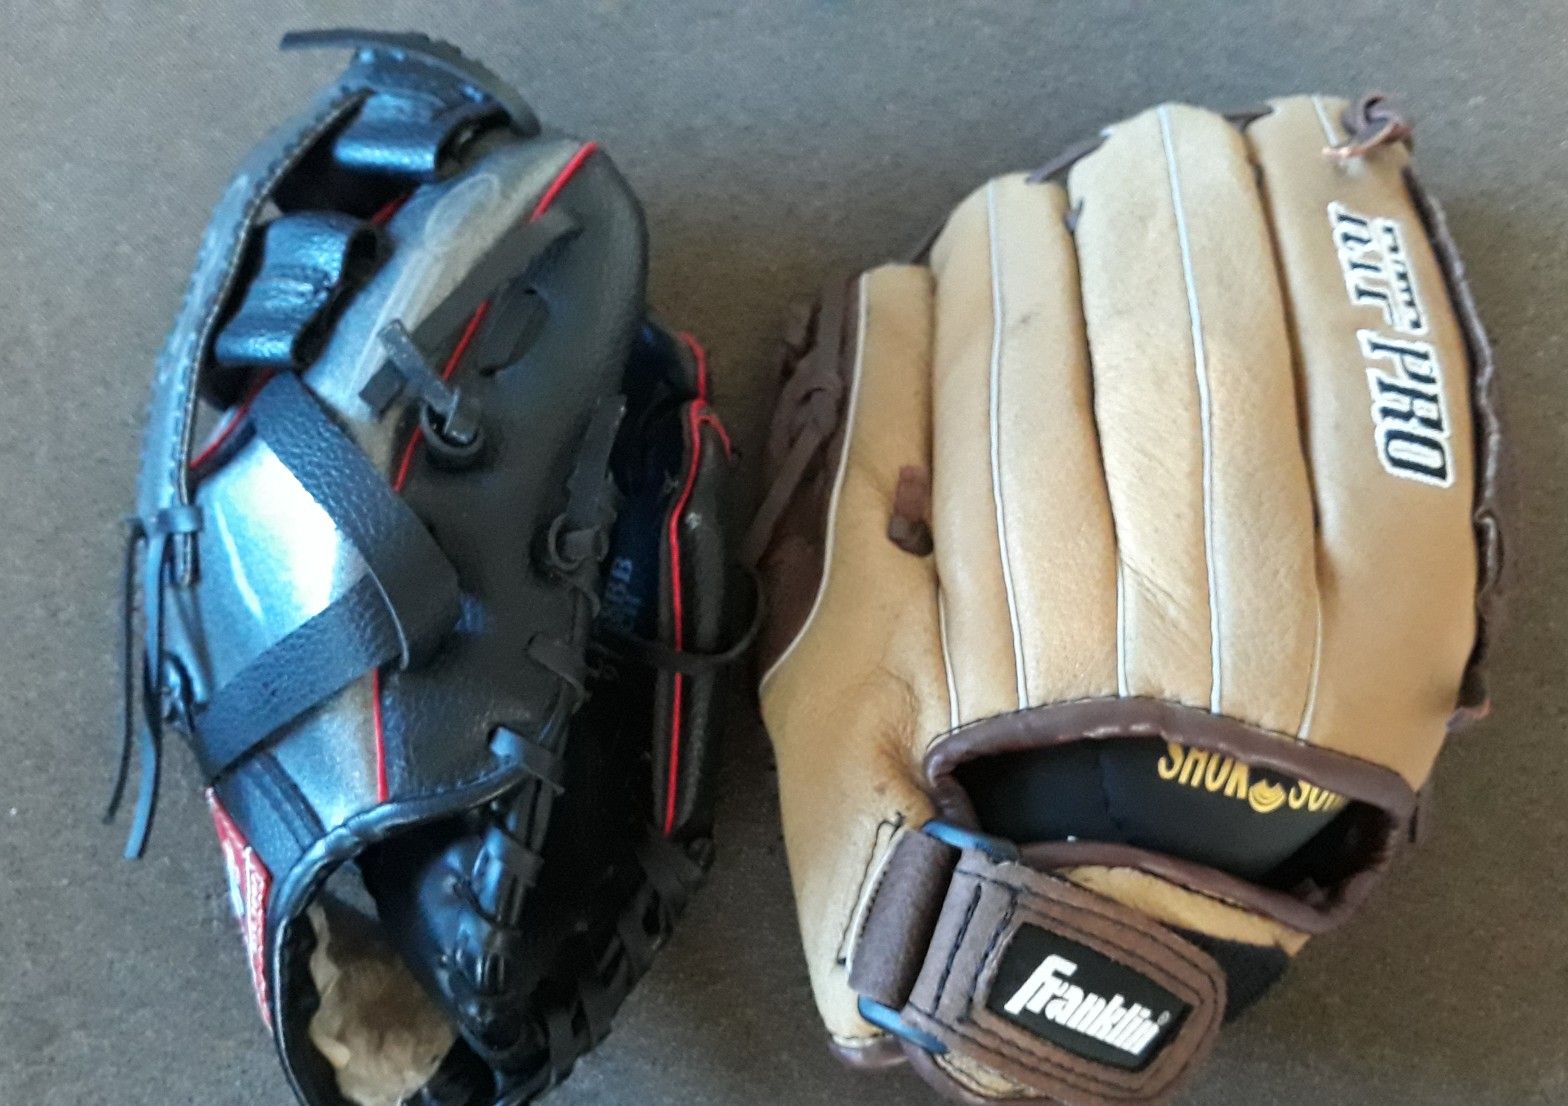 Rawlings 9 inch, Franklin 10 inch Softball gloves